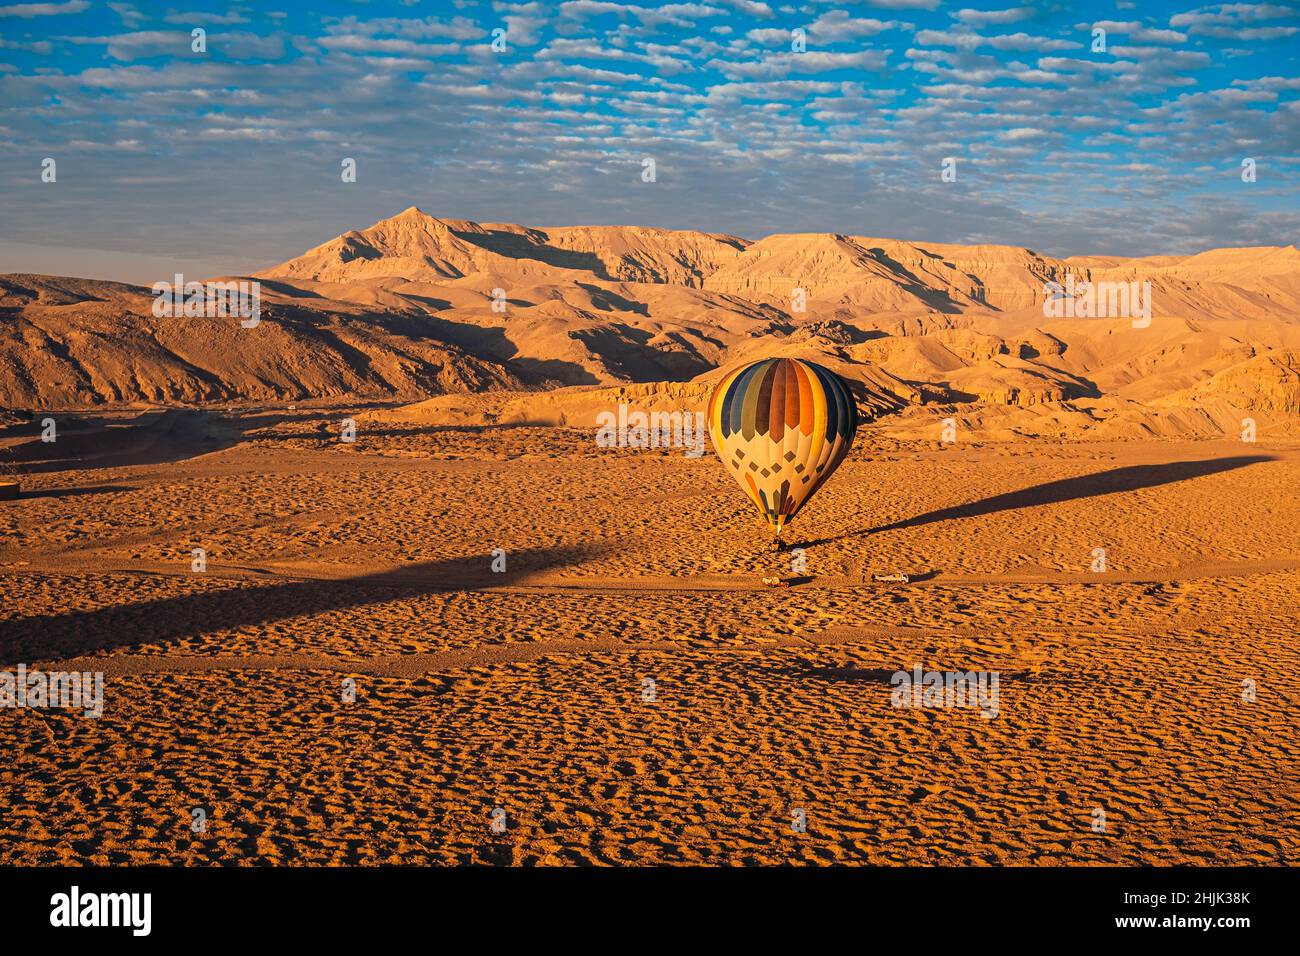 Blick auf einen einzigen Heißluftballon in luxor ägypten, der am Ende der Fahrt an einem beliebigen Ort landet. Viele Menschen sind sich nicht bewusst, dass Ballons tatsächlich landen ich Stockfoto